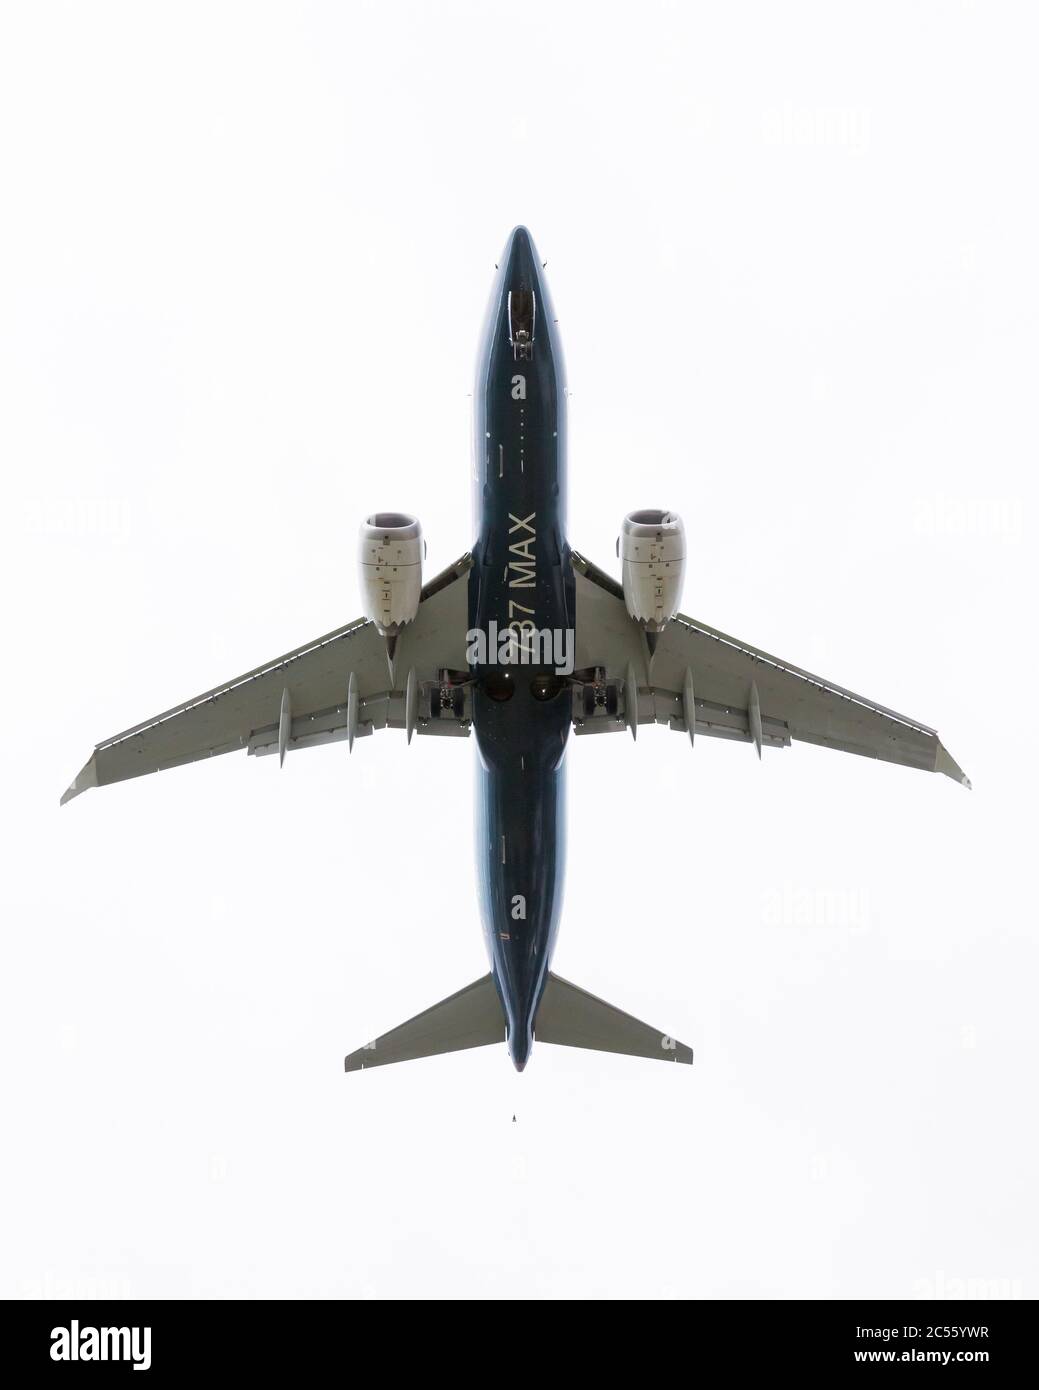 Seattle, Washington DC, États-Unis. 30 juin 2020. Un Boeing 737 MAX 7 débarque à Boeing Field lors d'un vol d'essai critique à Seattle le mardi 30 juin 2020. Le vol, le deuxième de trois prévu avec un pilote de la FAA à bord, est la clé de la certification de l'avion depuis son échouement mondial en 2019 après deux accidents mortels. Crédit : Paul Christian Gordon/Alay Live News Banque D'Images